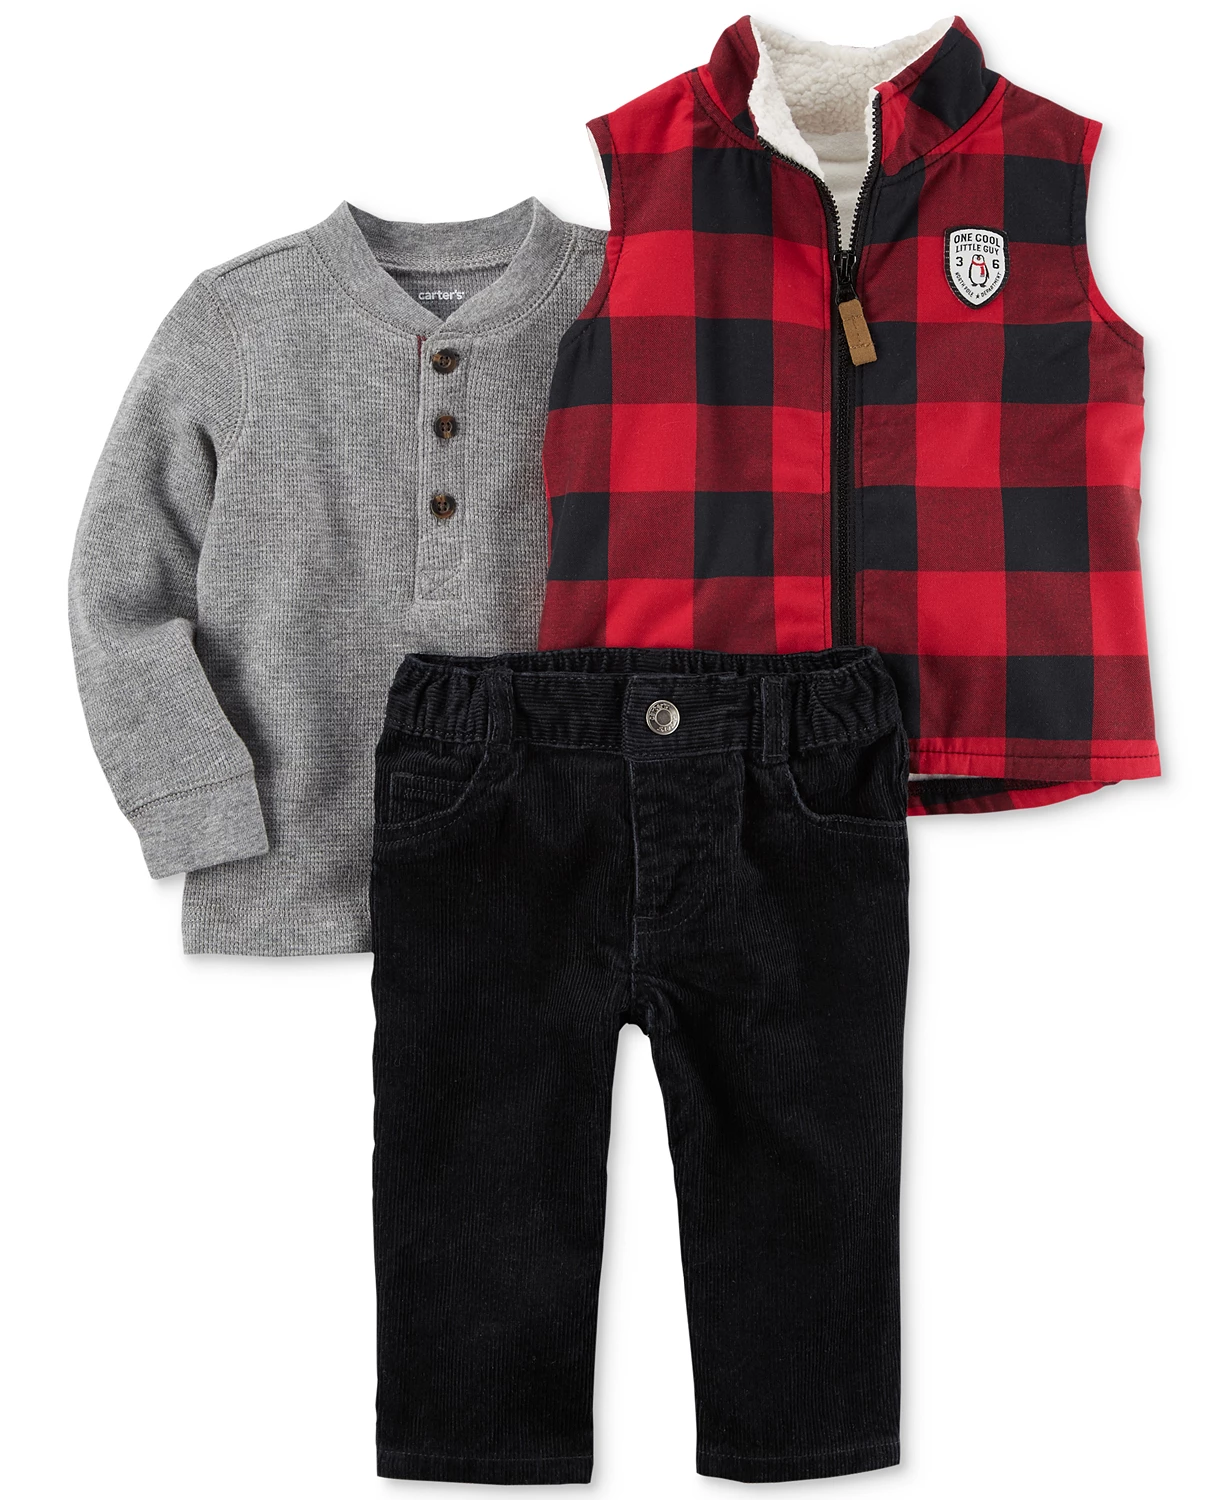 Baby Wholesale Clothing Washington